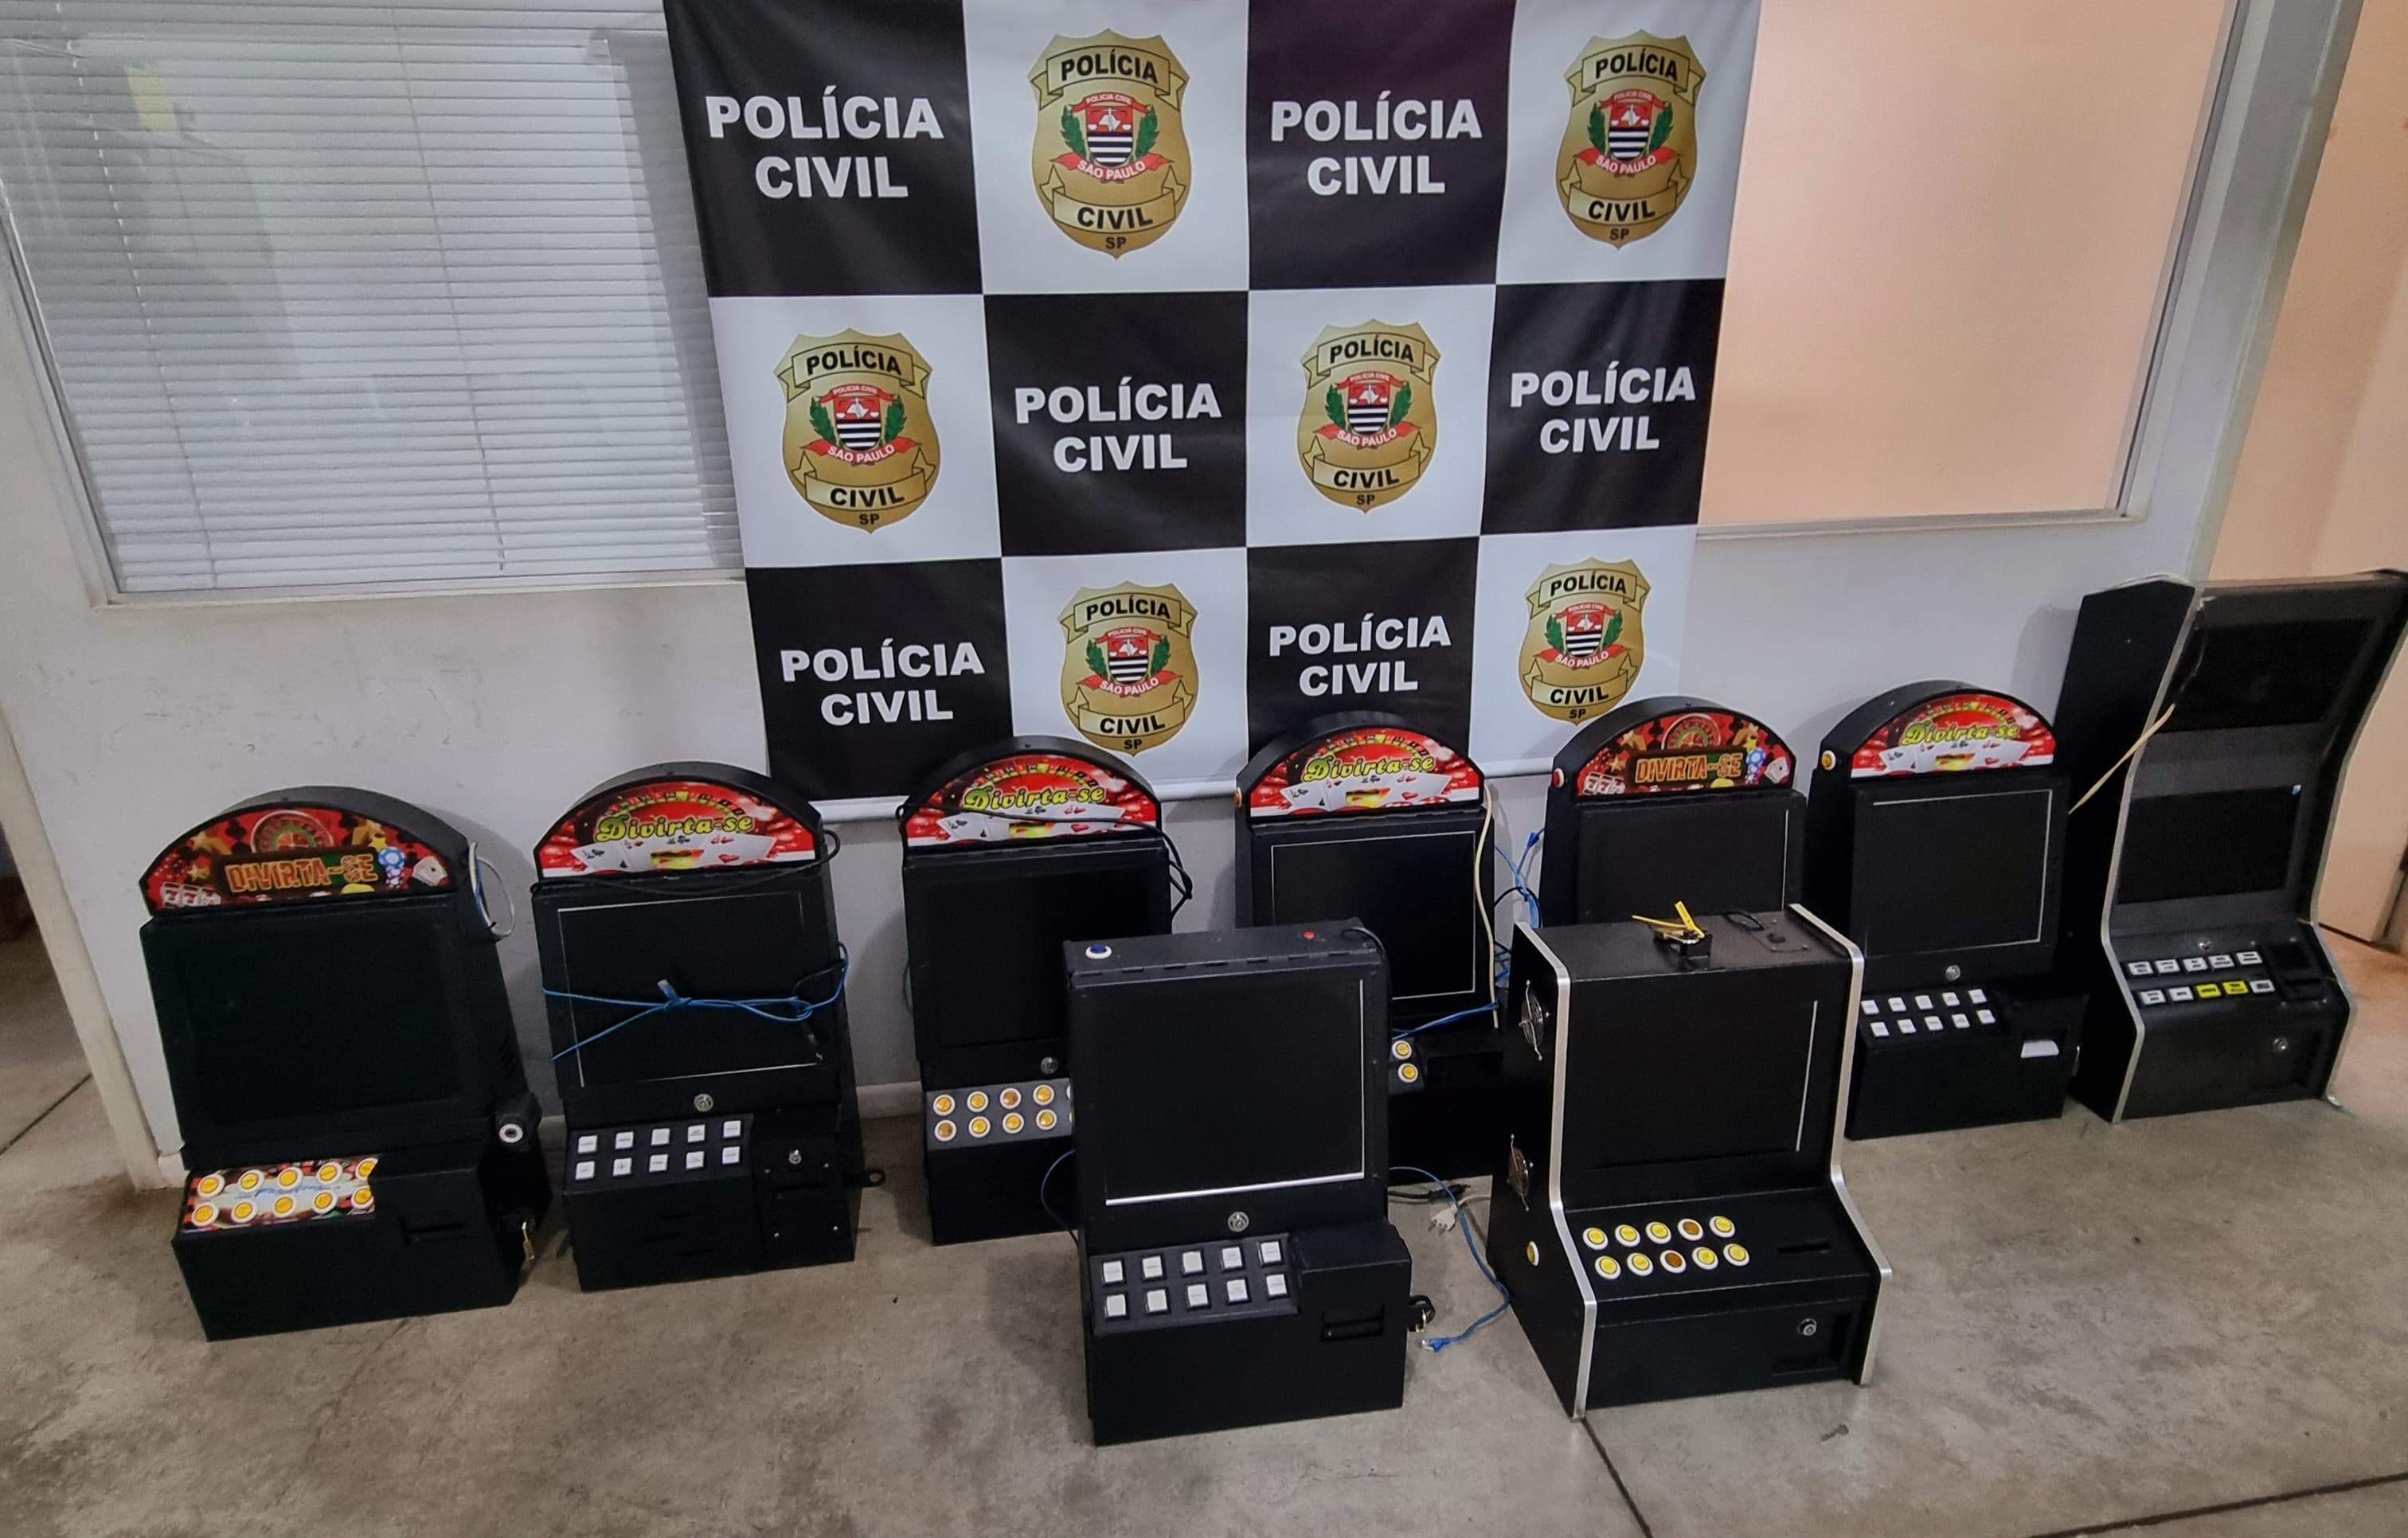 Nove máquinas de caça-níquel foram apreendidas em imóvel no Centro de Bauru. Foto: Polícia Civil/Divulgação